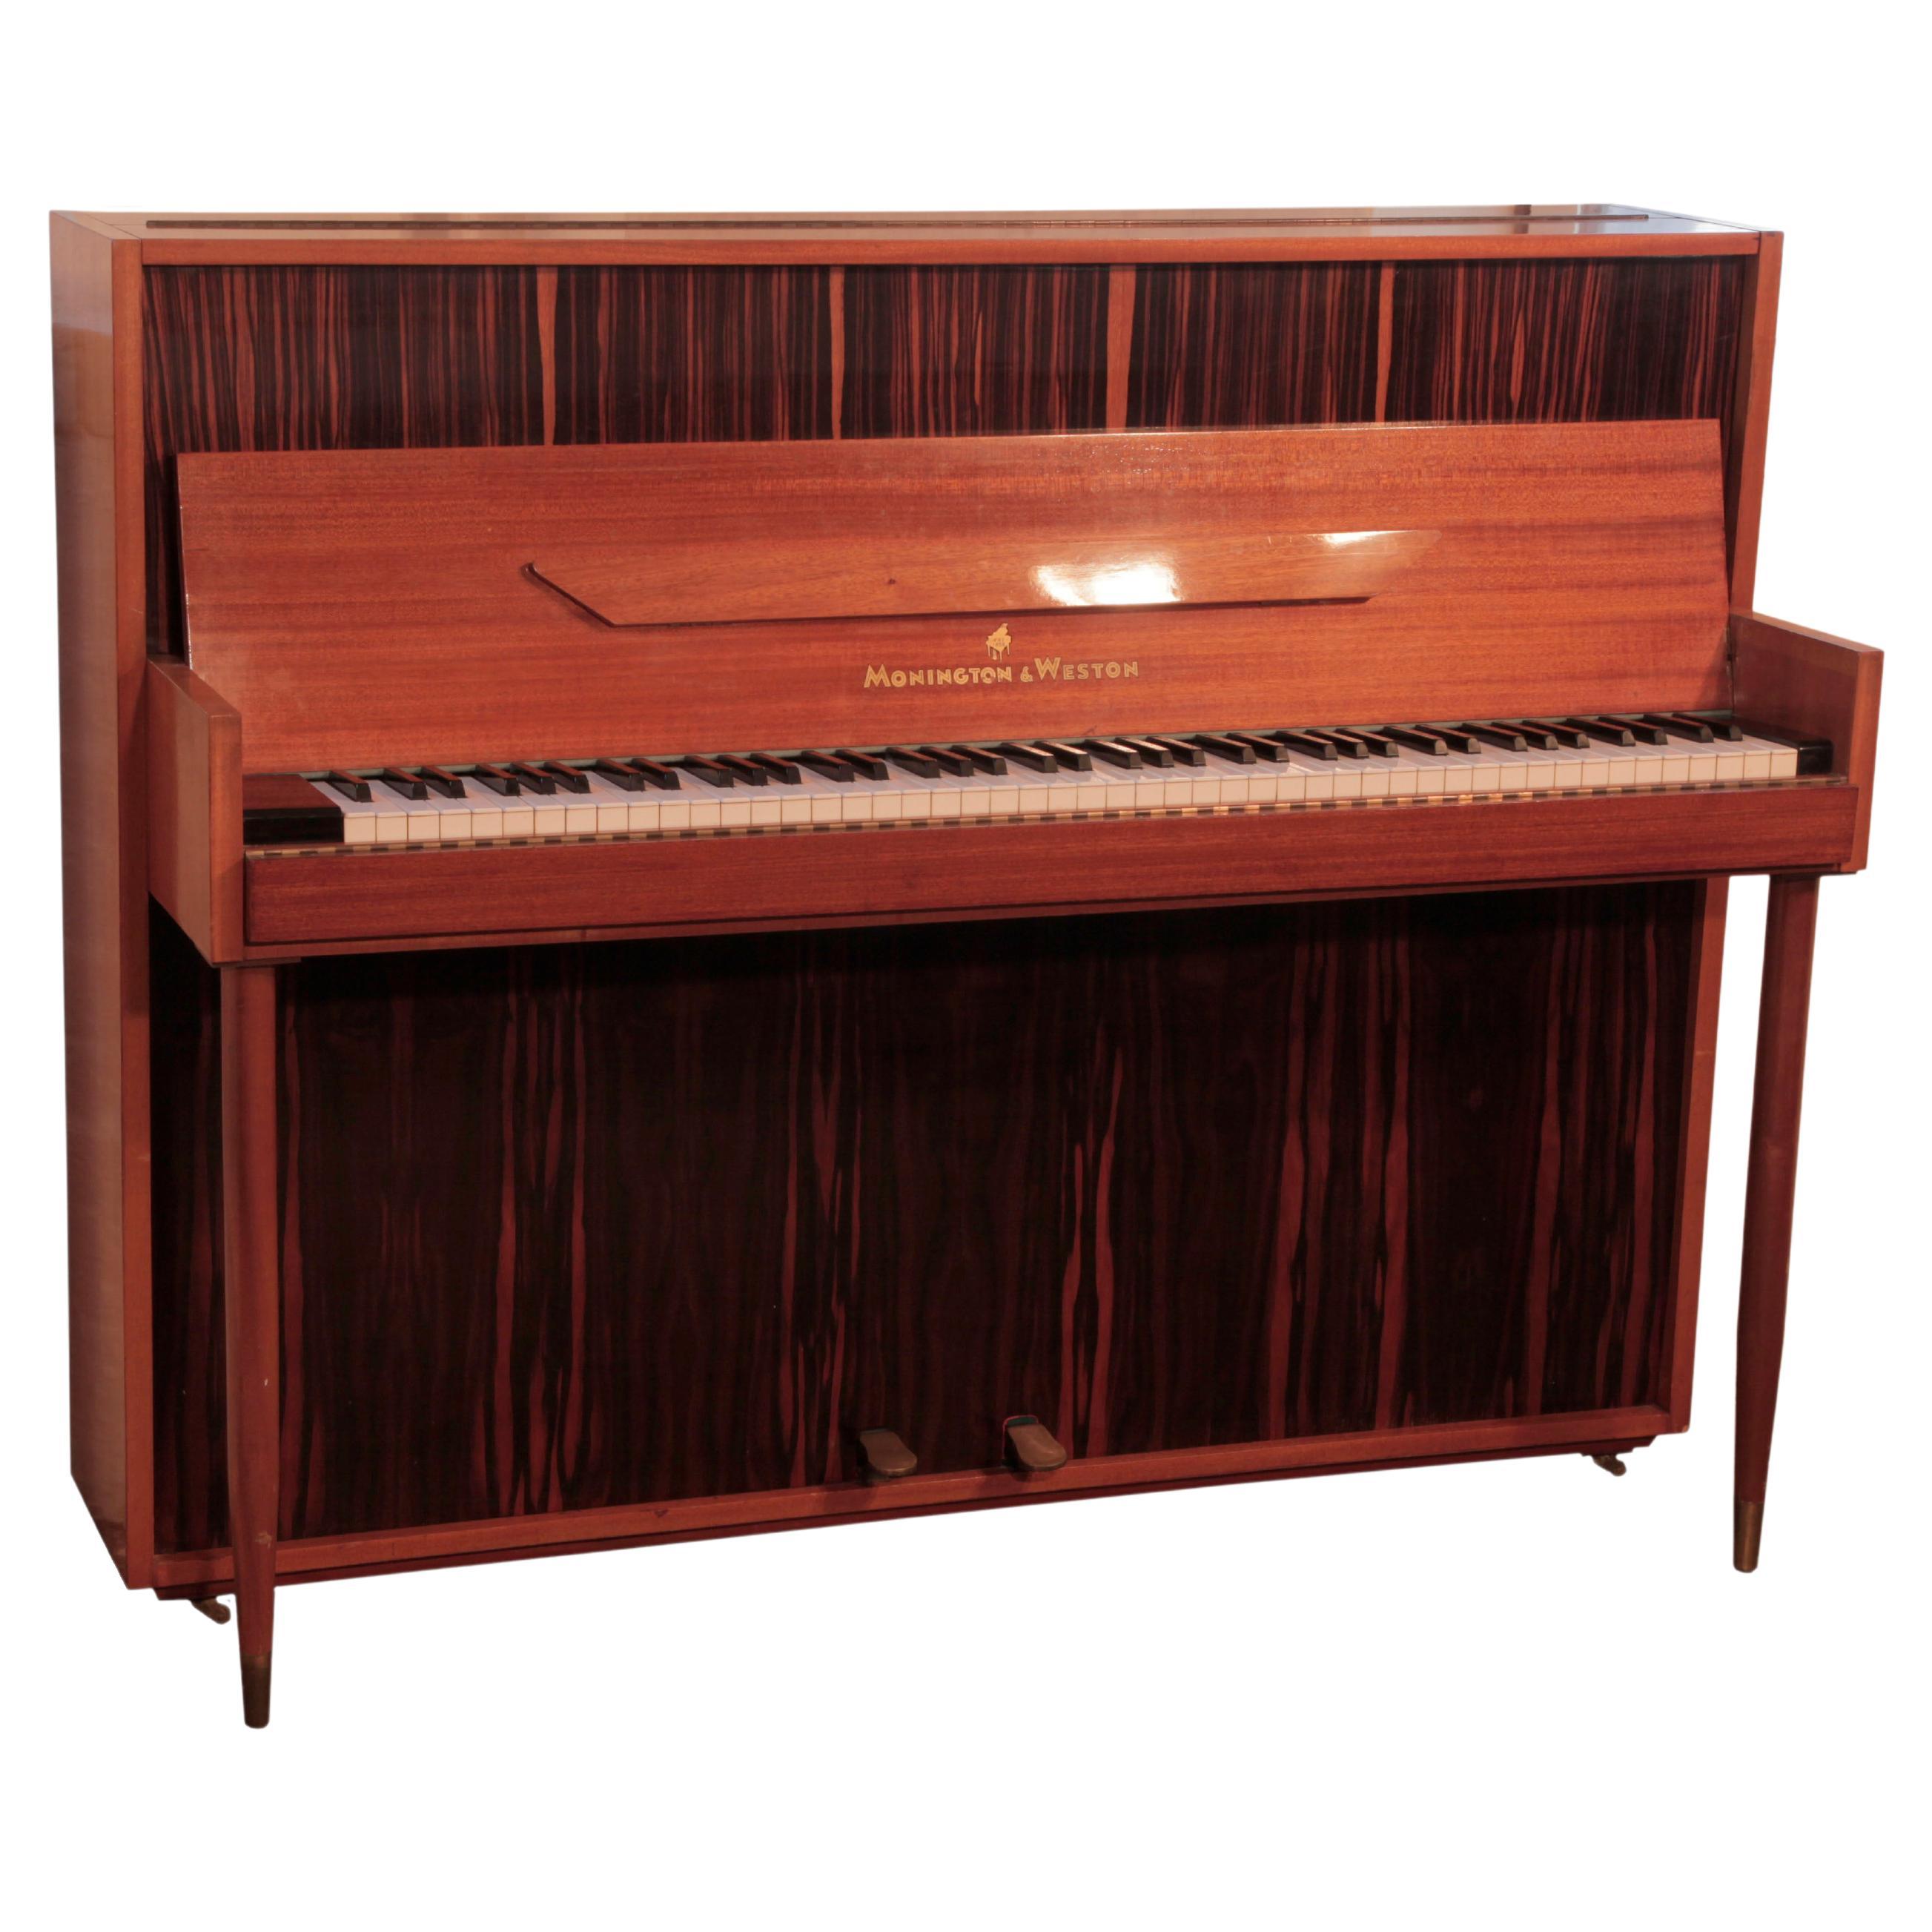 Mid-Century Modern Monington and Weston Piano in Mahogany and Macassar Ebony For Sale